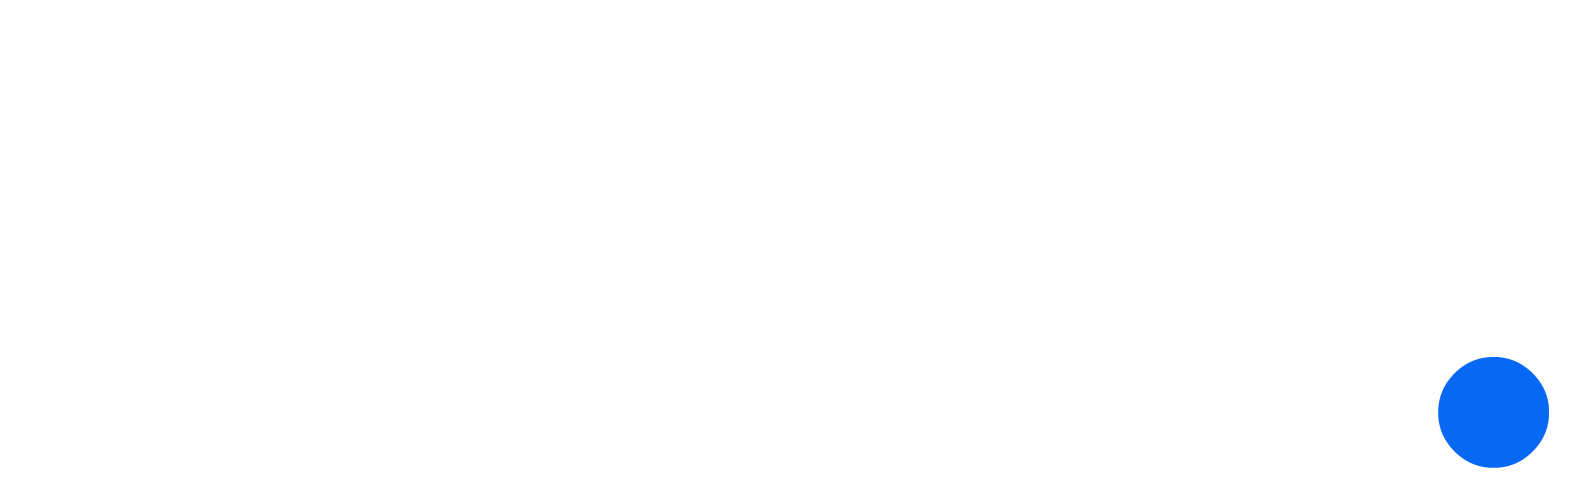 Clico – Consultoria y soporte IT